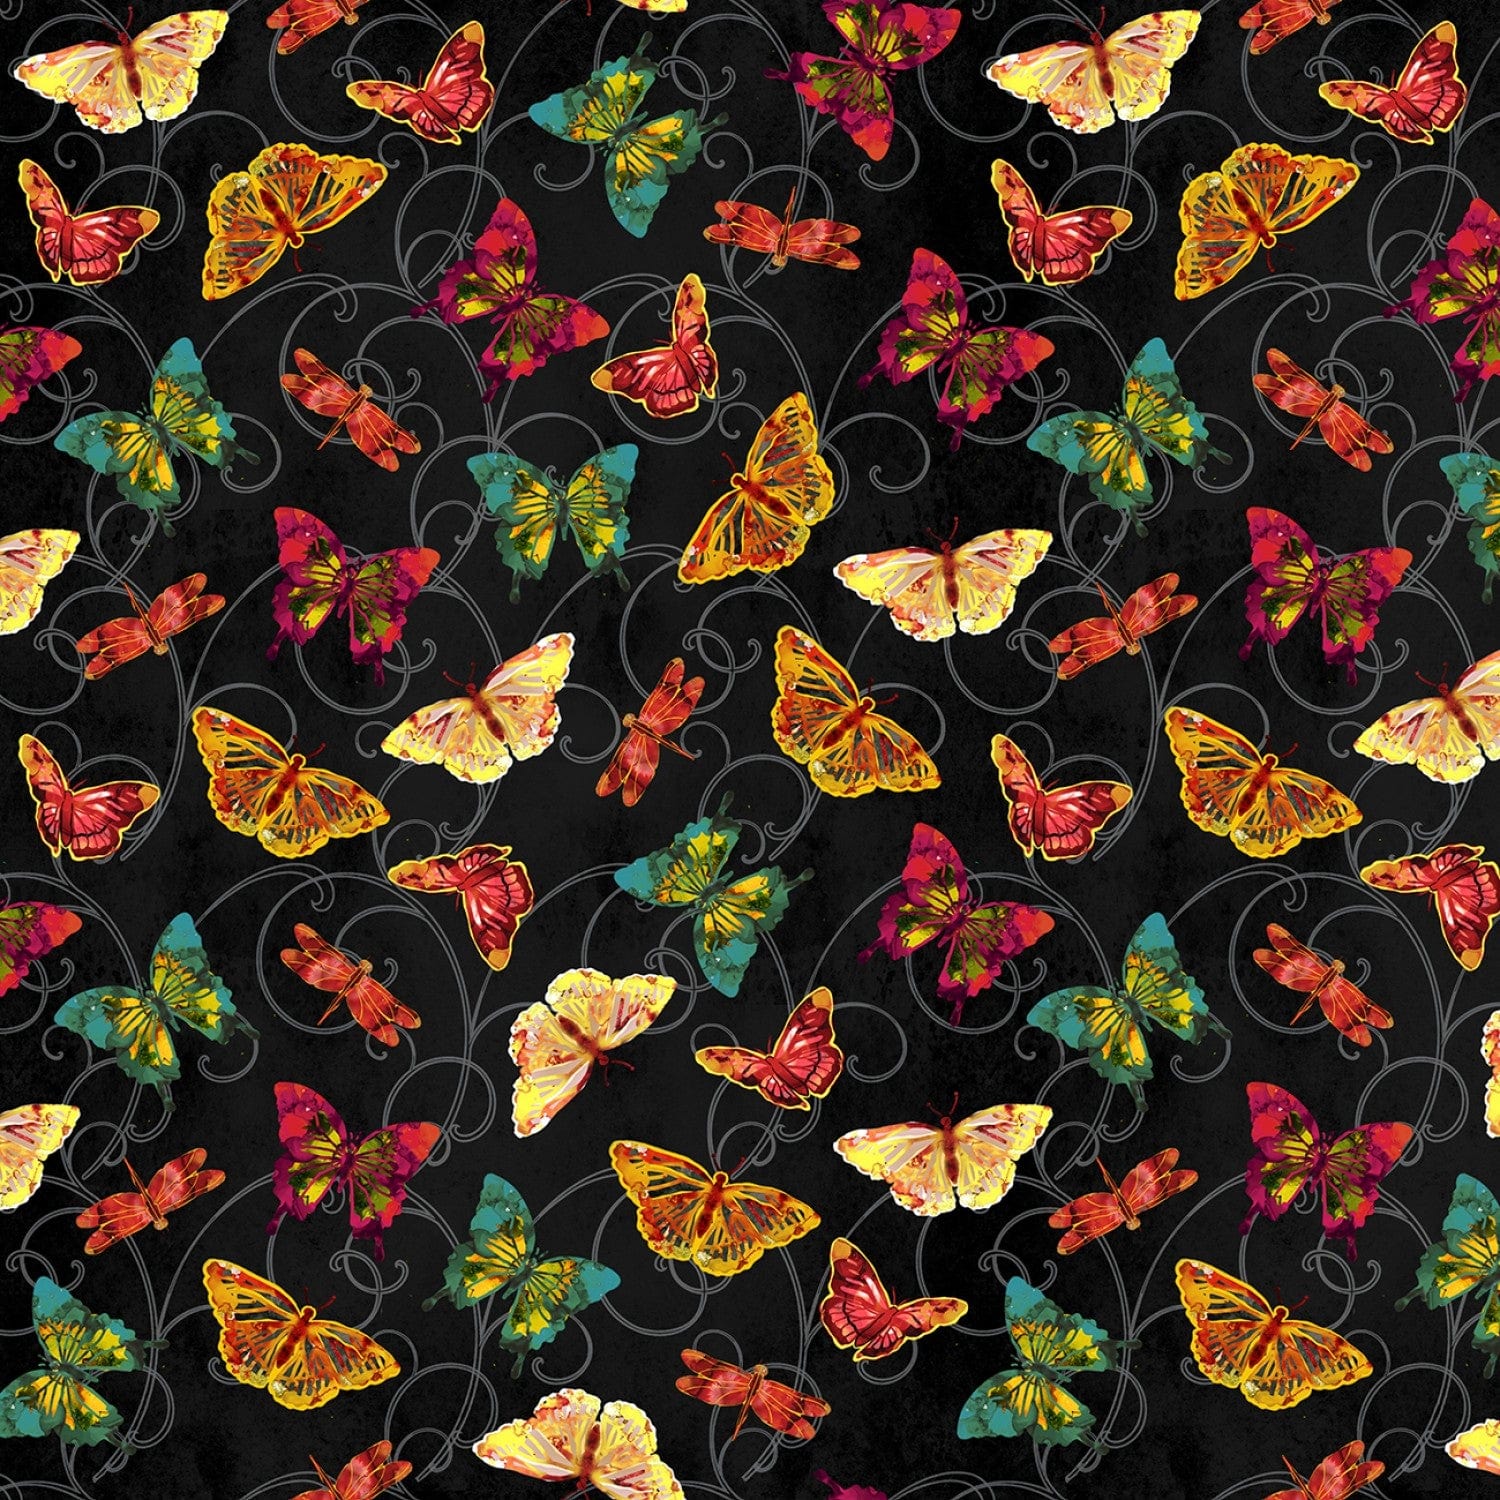 Poppy Days - Black Butterfly Toss - 5414-99 - Studio E - Flower Fabrics